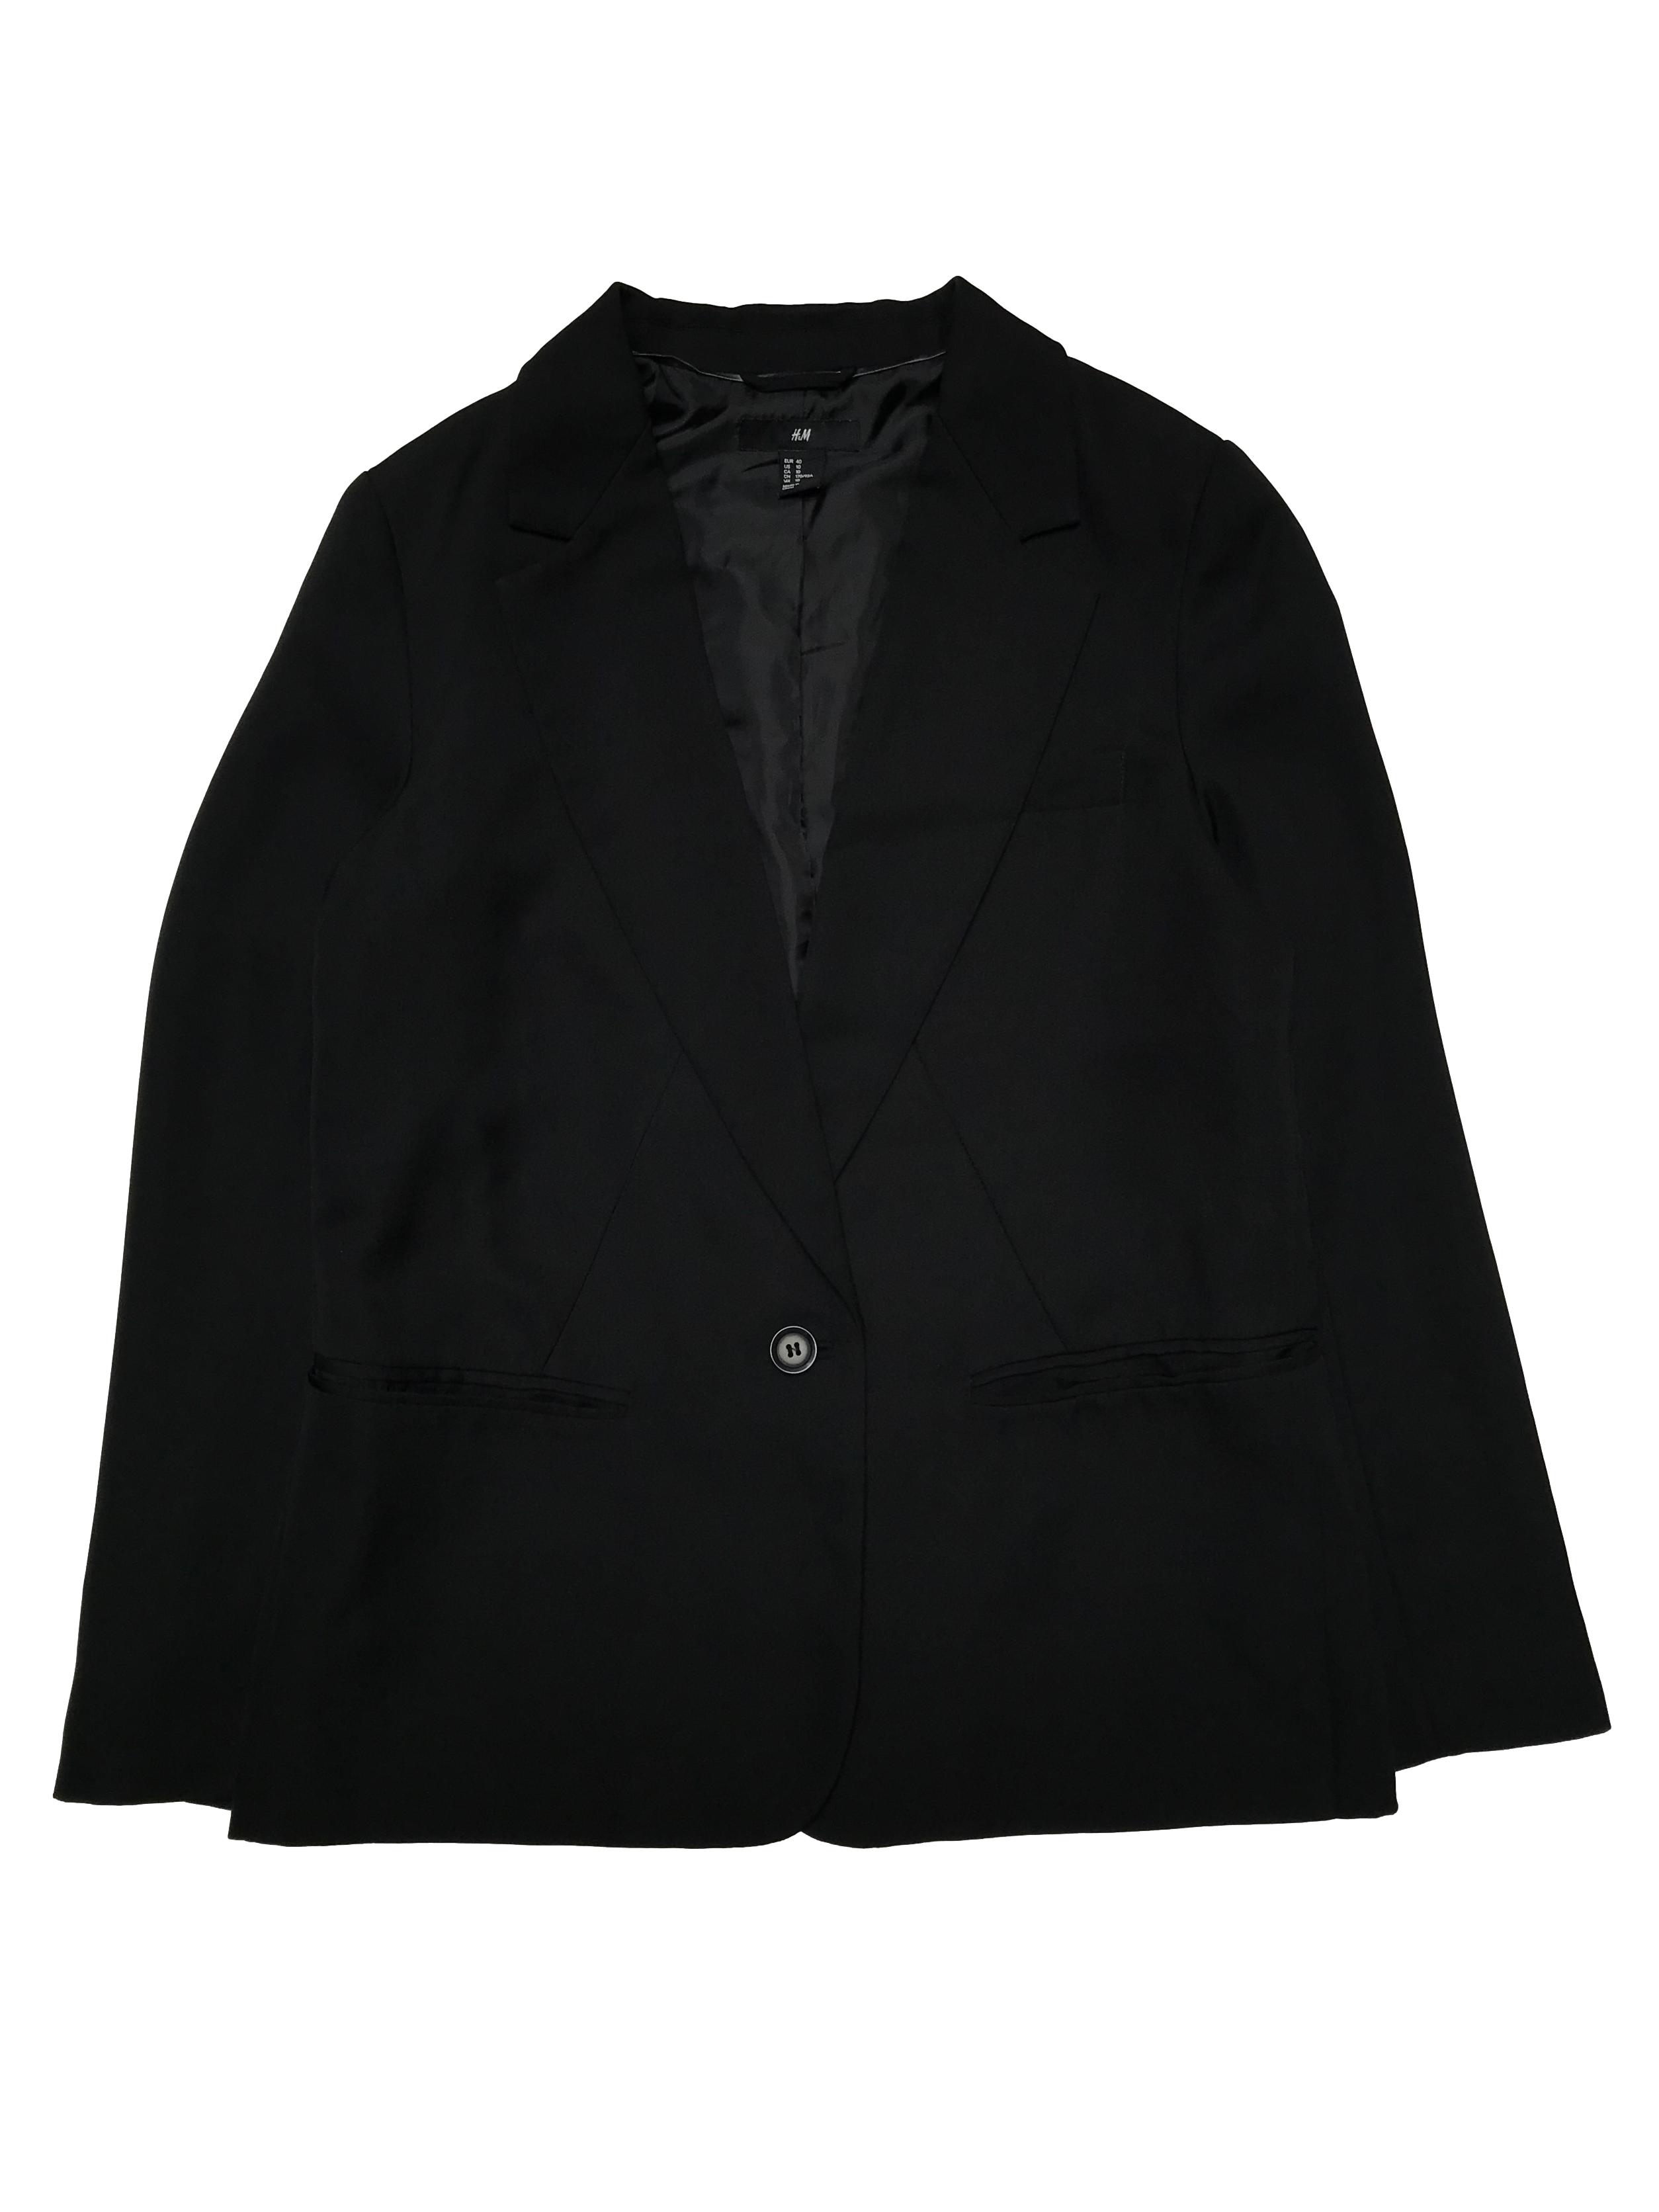 Blazer H&M corte recto, negro de un solo botón, con bolsillos delanteros, es forrado. Ancho 102cm Largo 68cm. Precio original S/ 179